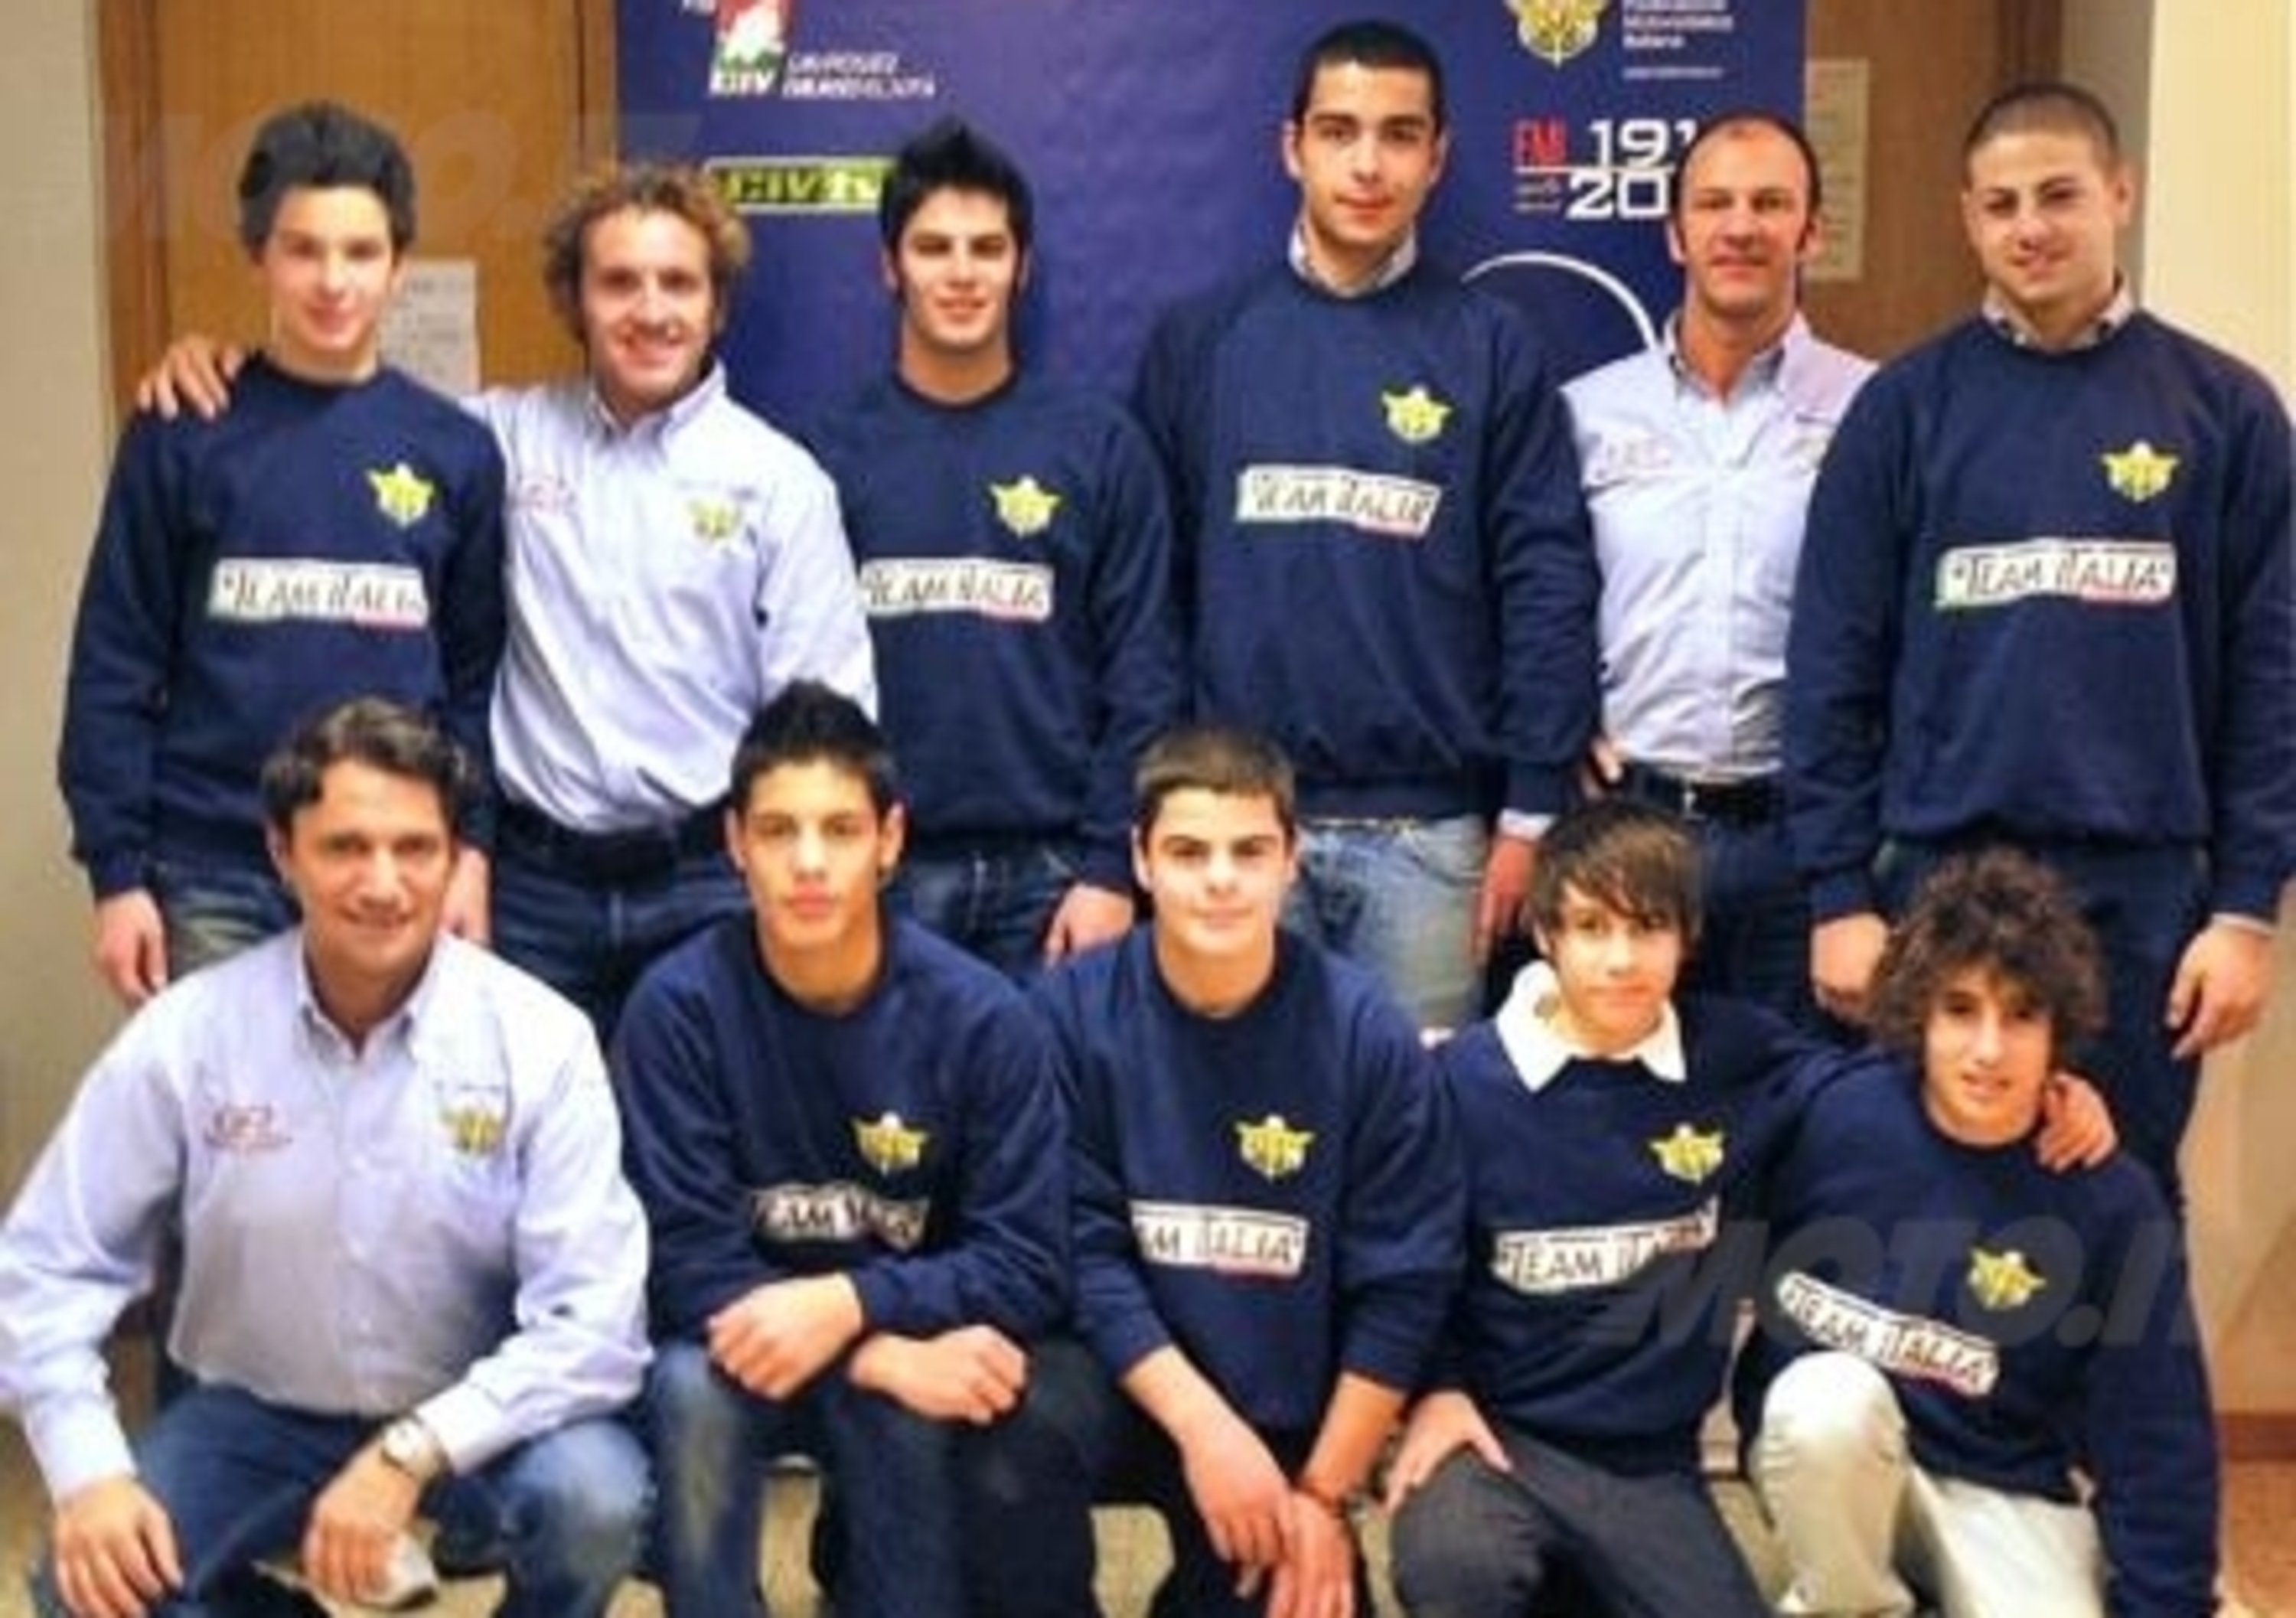 La FMI presenta il Team Italia Velocit&agrave; 2011